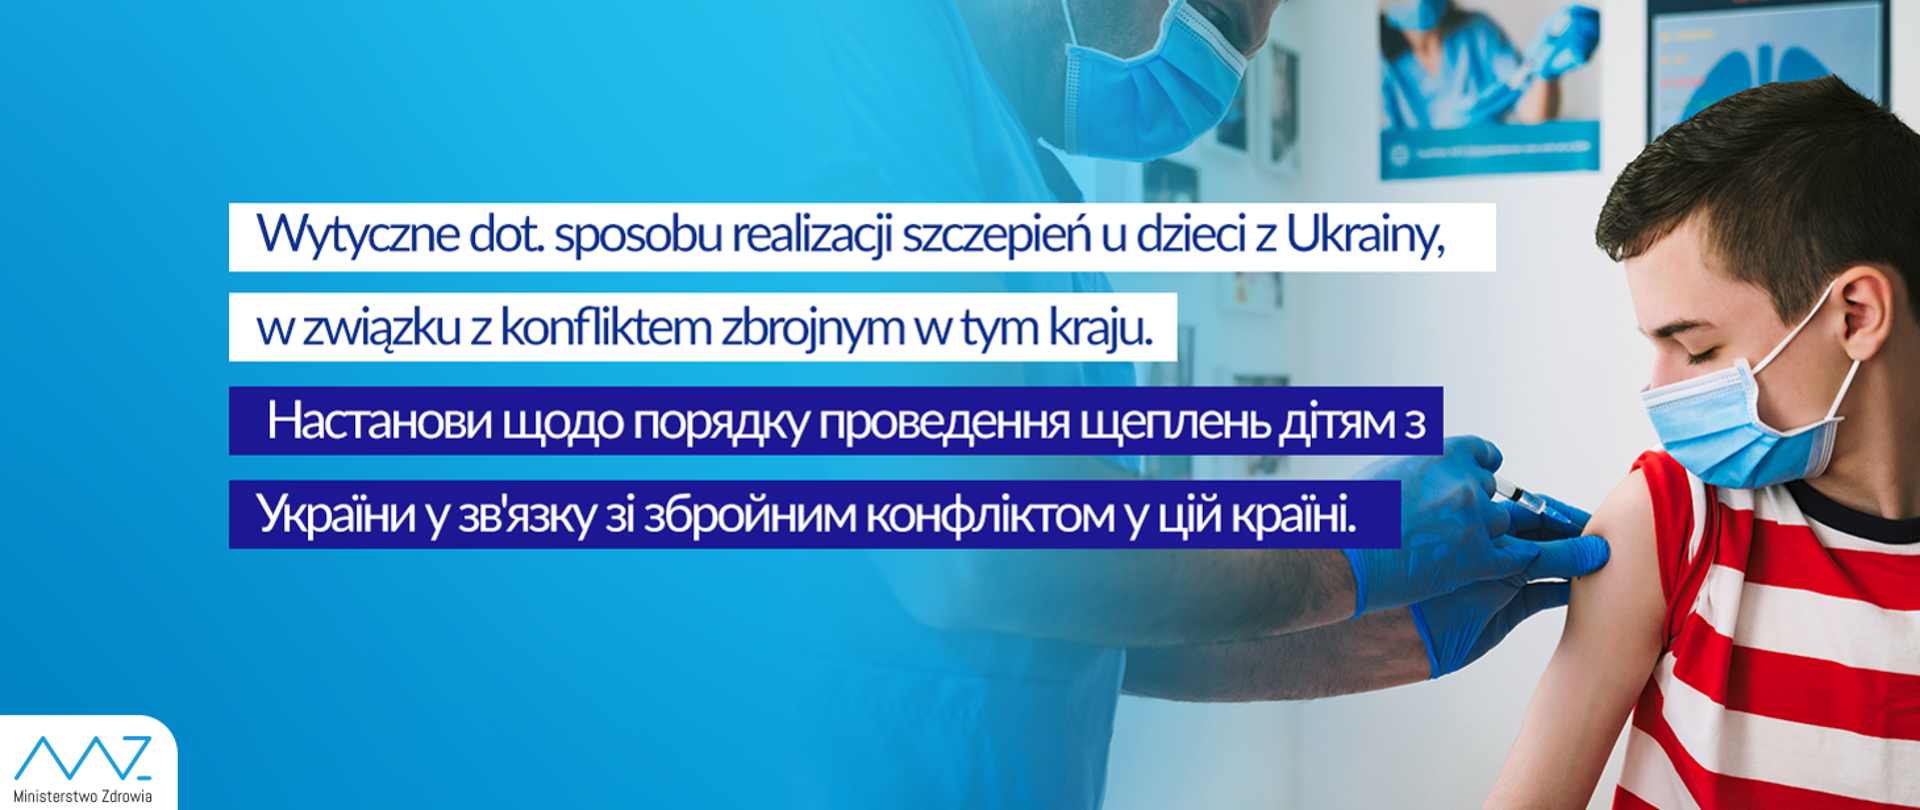 Wytyczne dot. sposobu realizacji szczepień dzieci z Ukrainy, w związku z konfliktem zbrojnym w tym kraju 